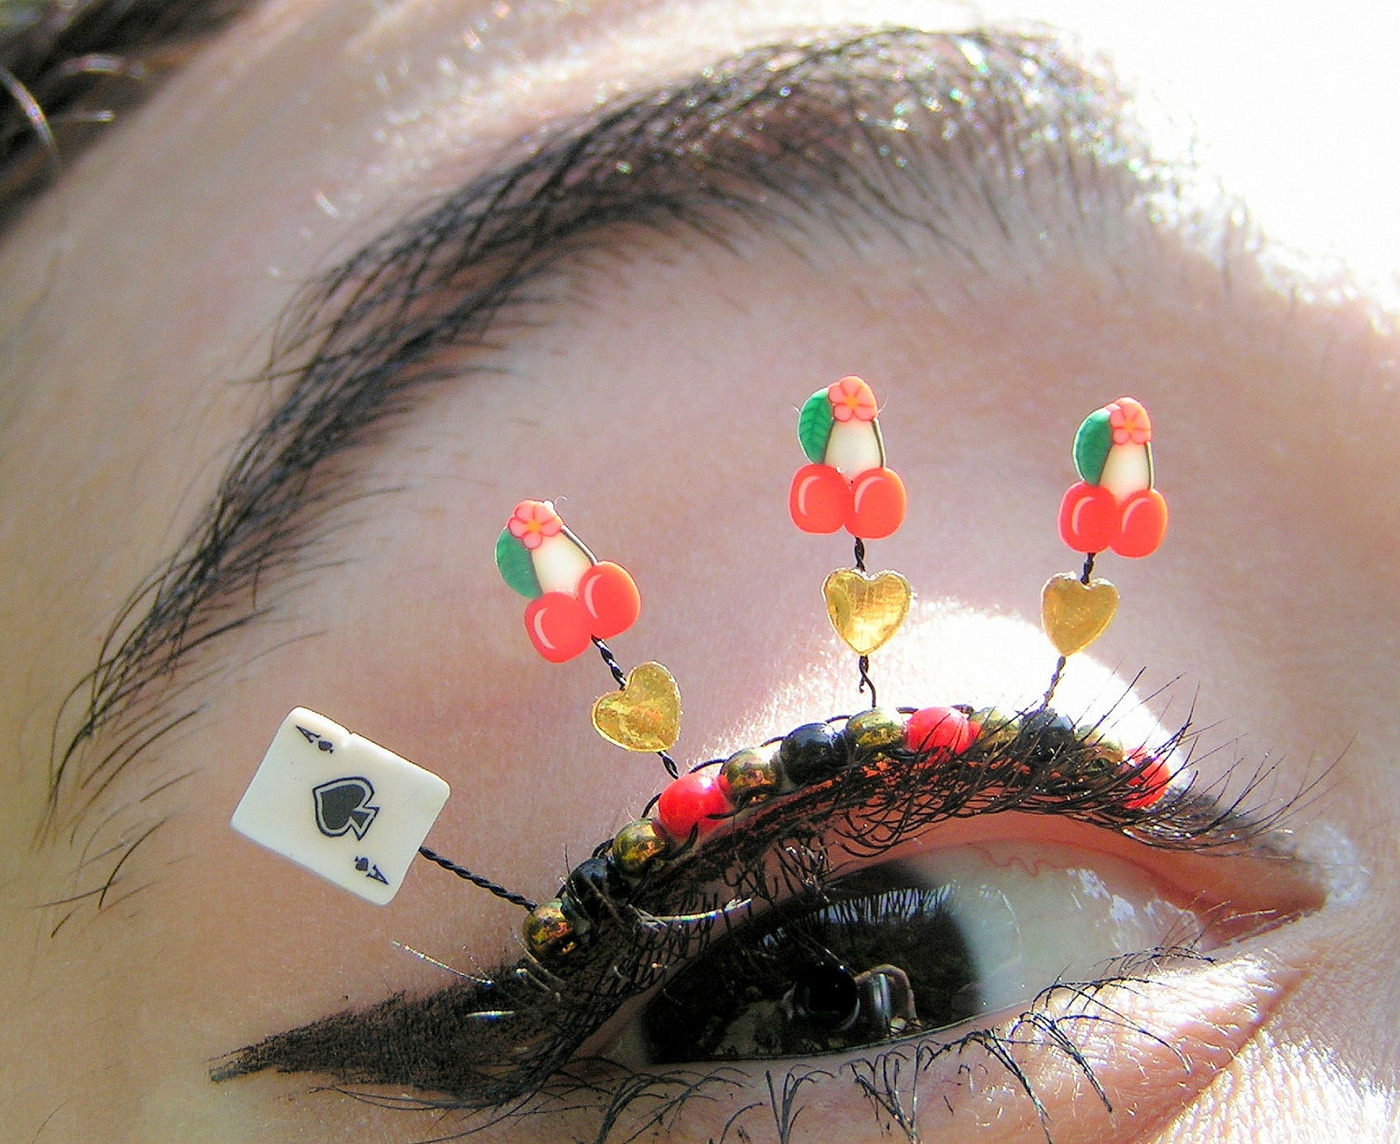 extreme-eyelashes-jewelry-art